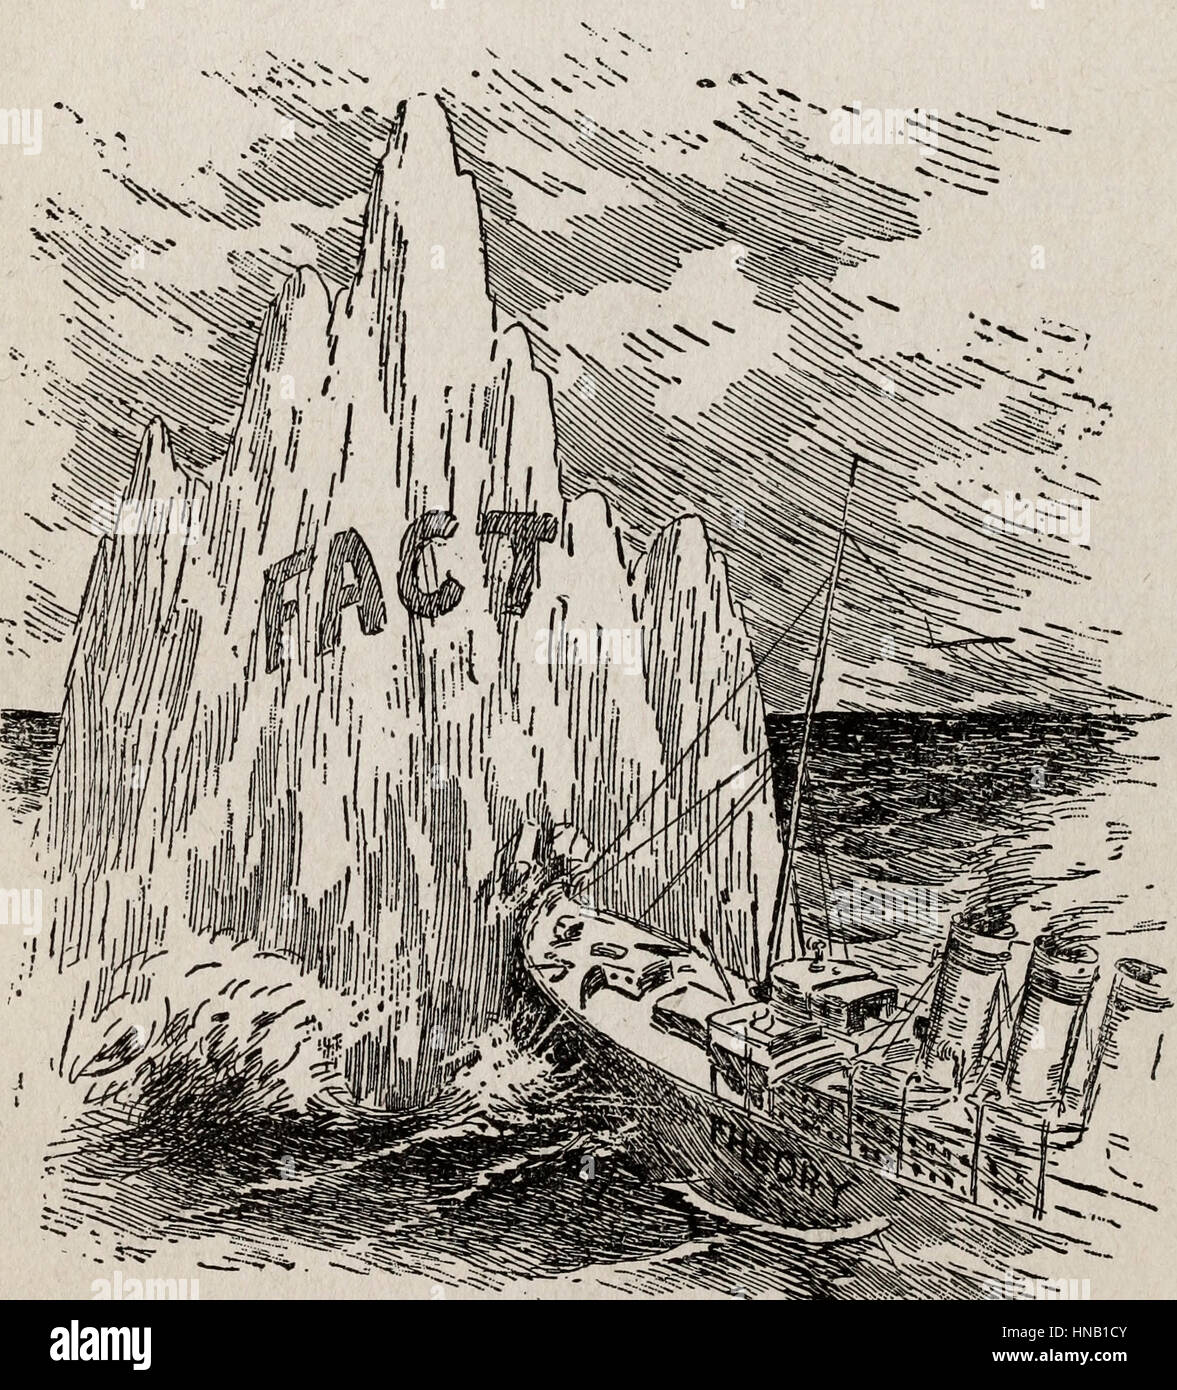 La teoria del Titanic (inaffondabile) colpendo il fatto dell'Iceberg Foto Stock